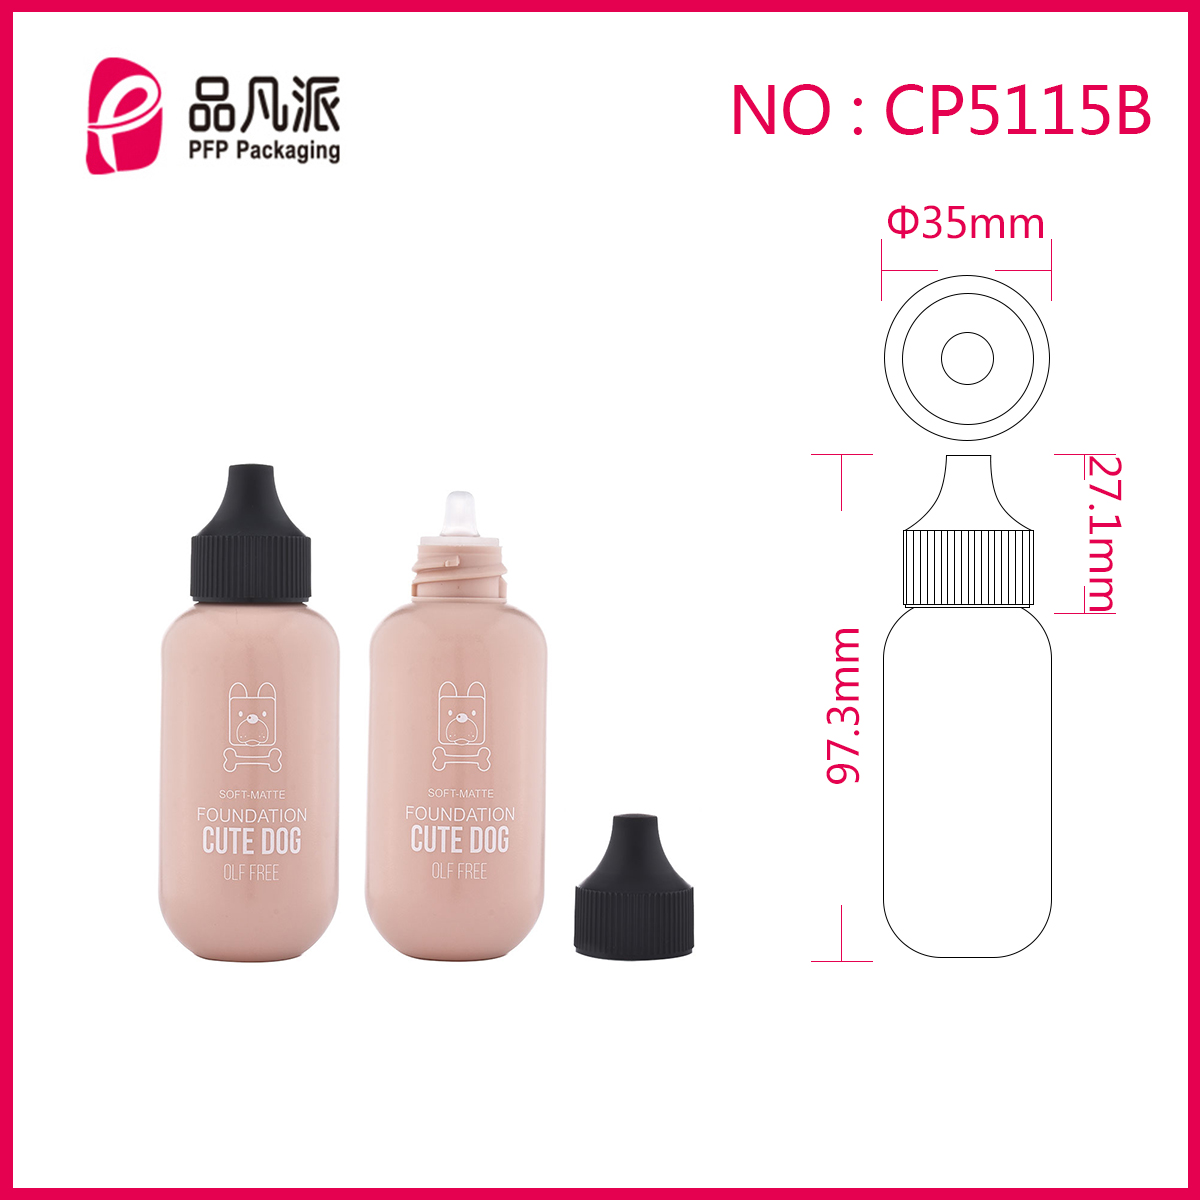 Feeding-bottle Moisturizing Foundation Make-up CP5115B